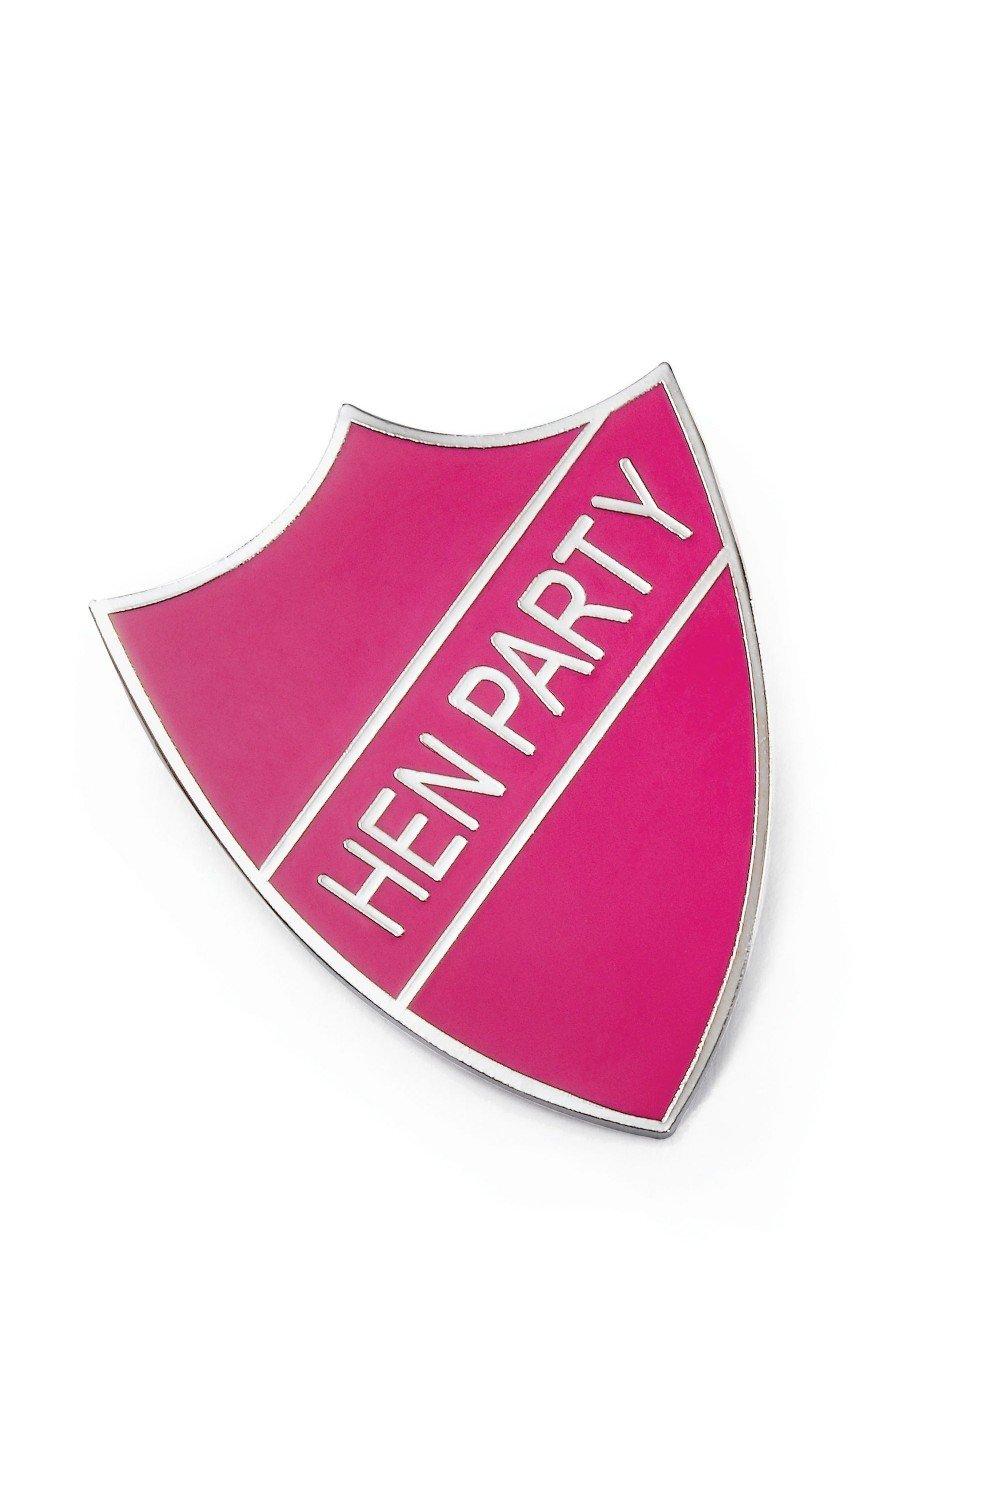 Hen Party School Badge